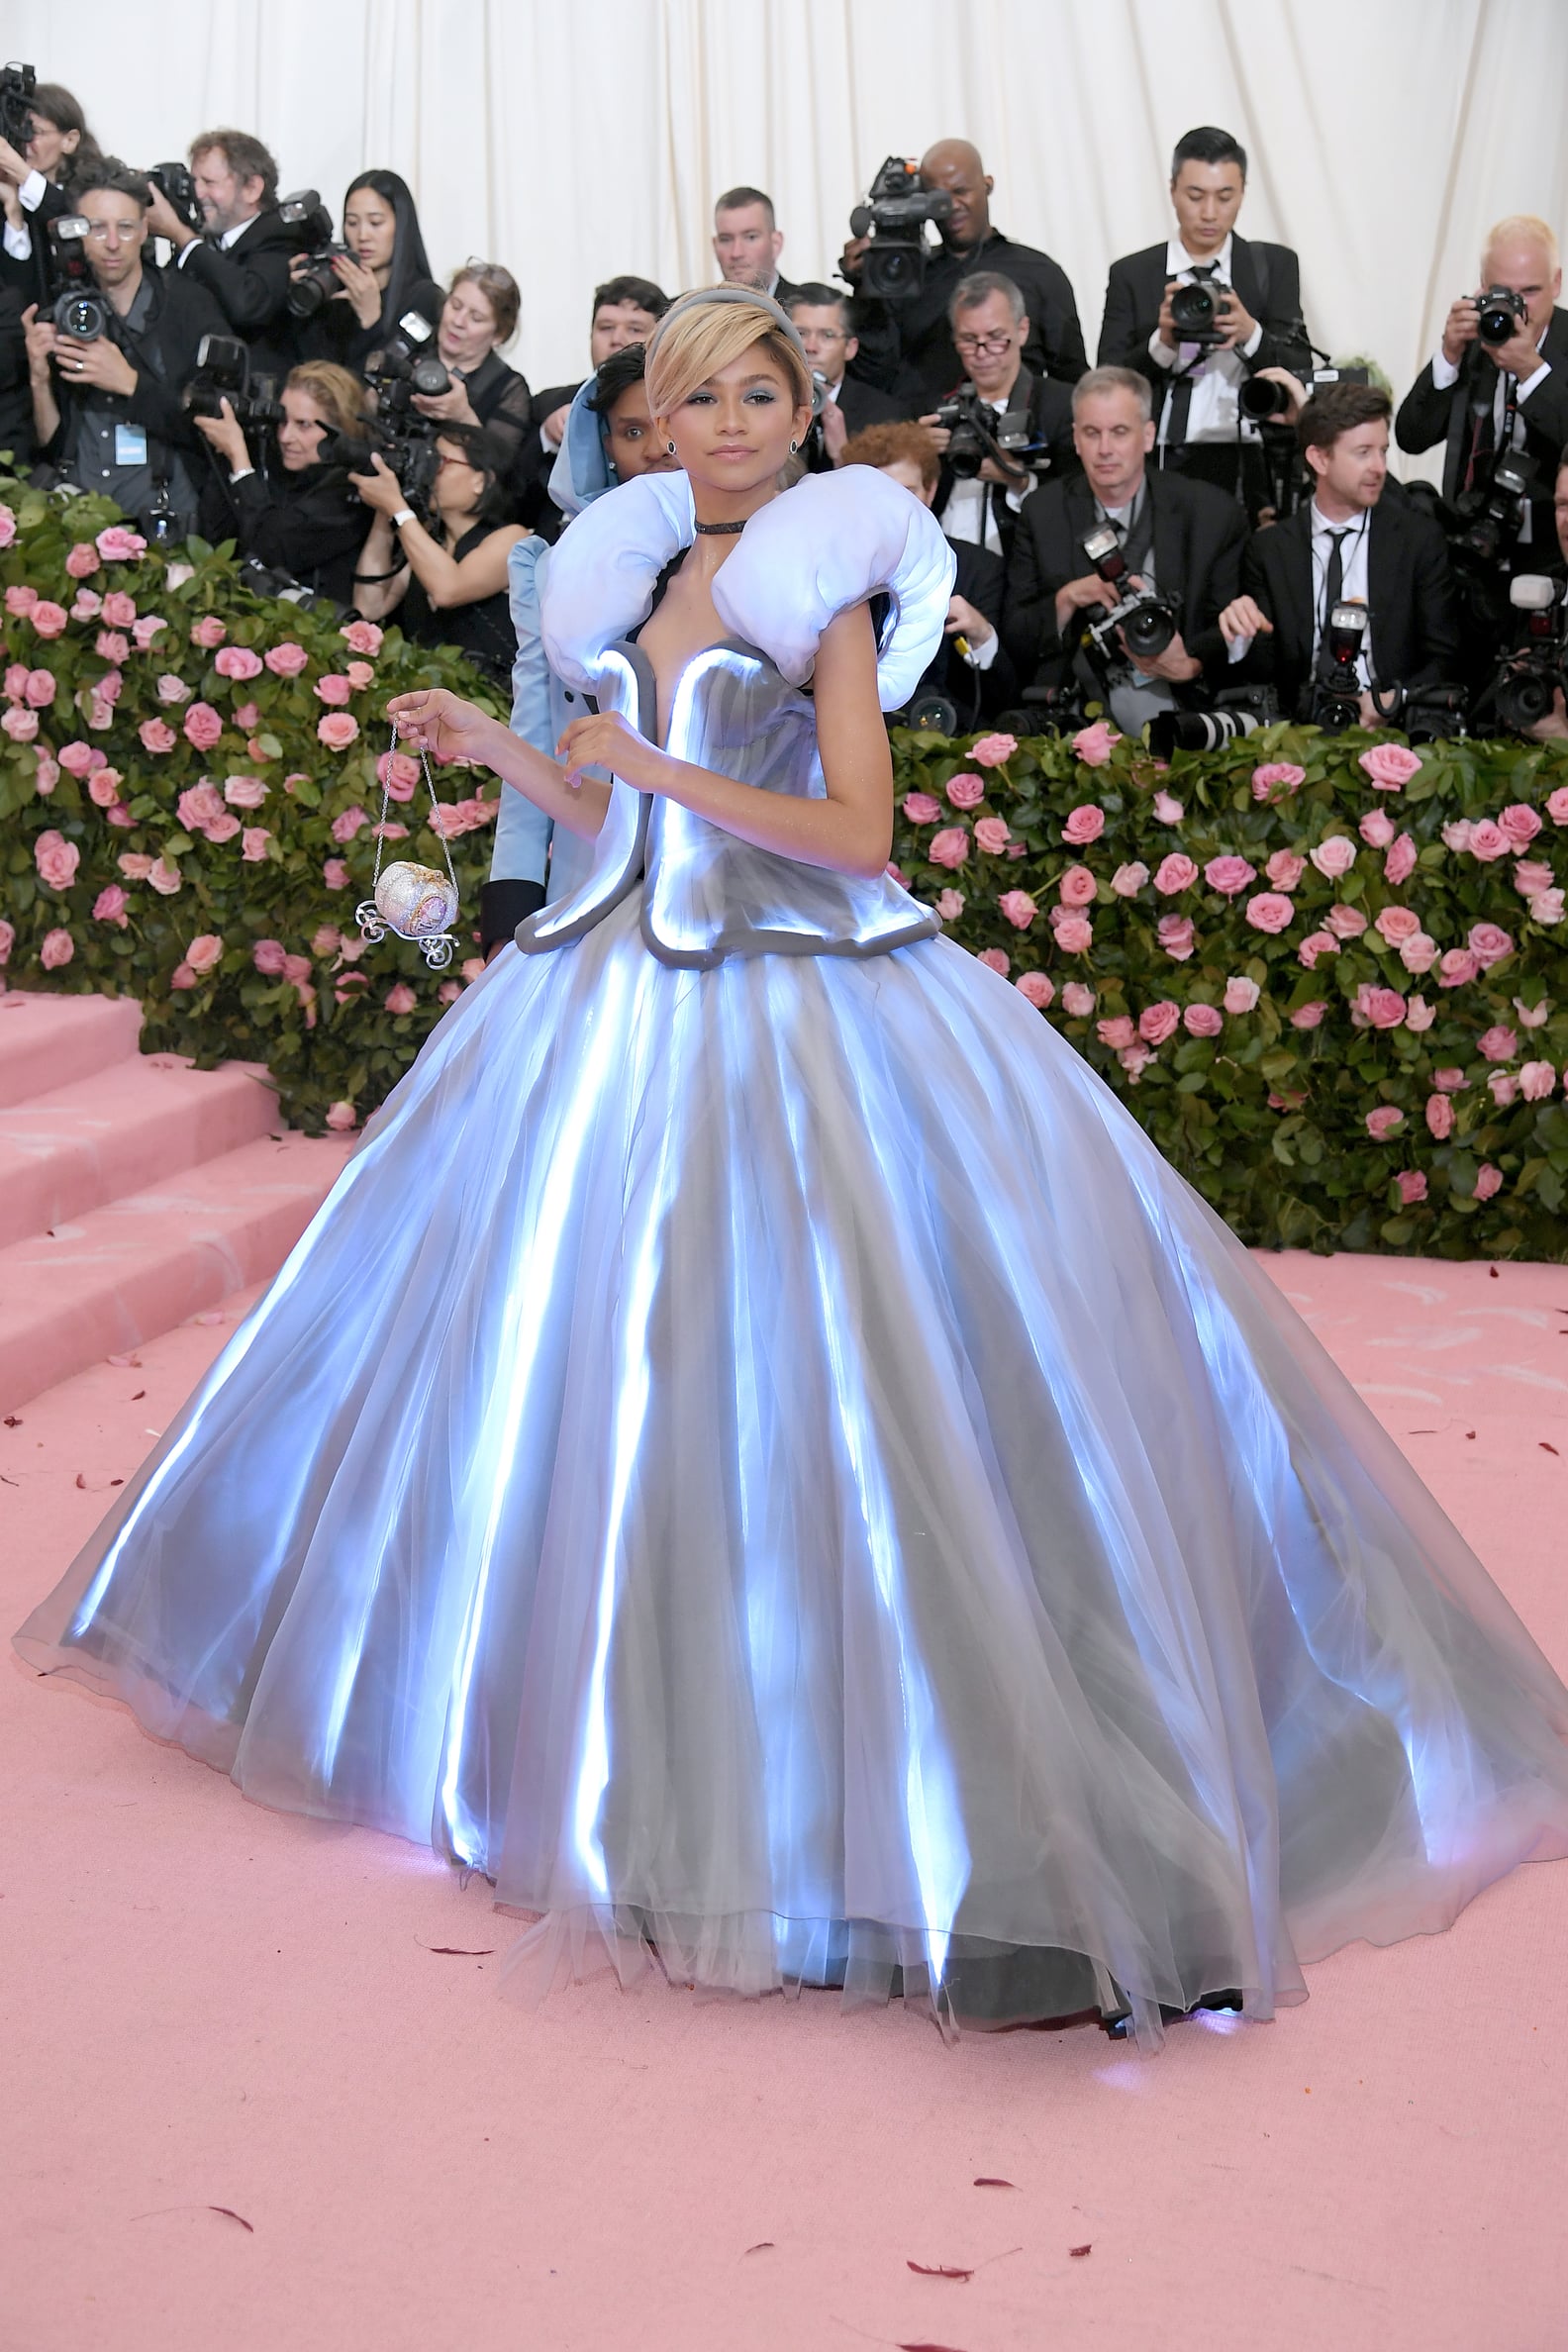 Zendaya's Cinderella Dress at the 2019 Met Gala | POPSUGAR Fashion